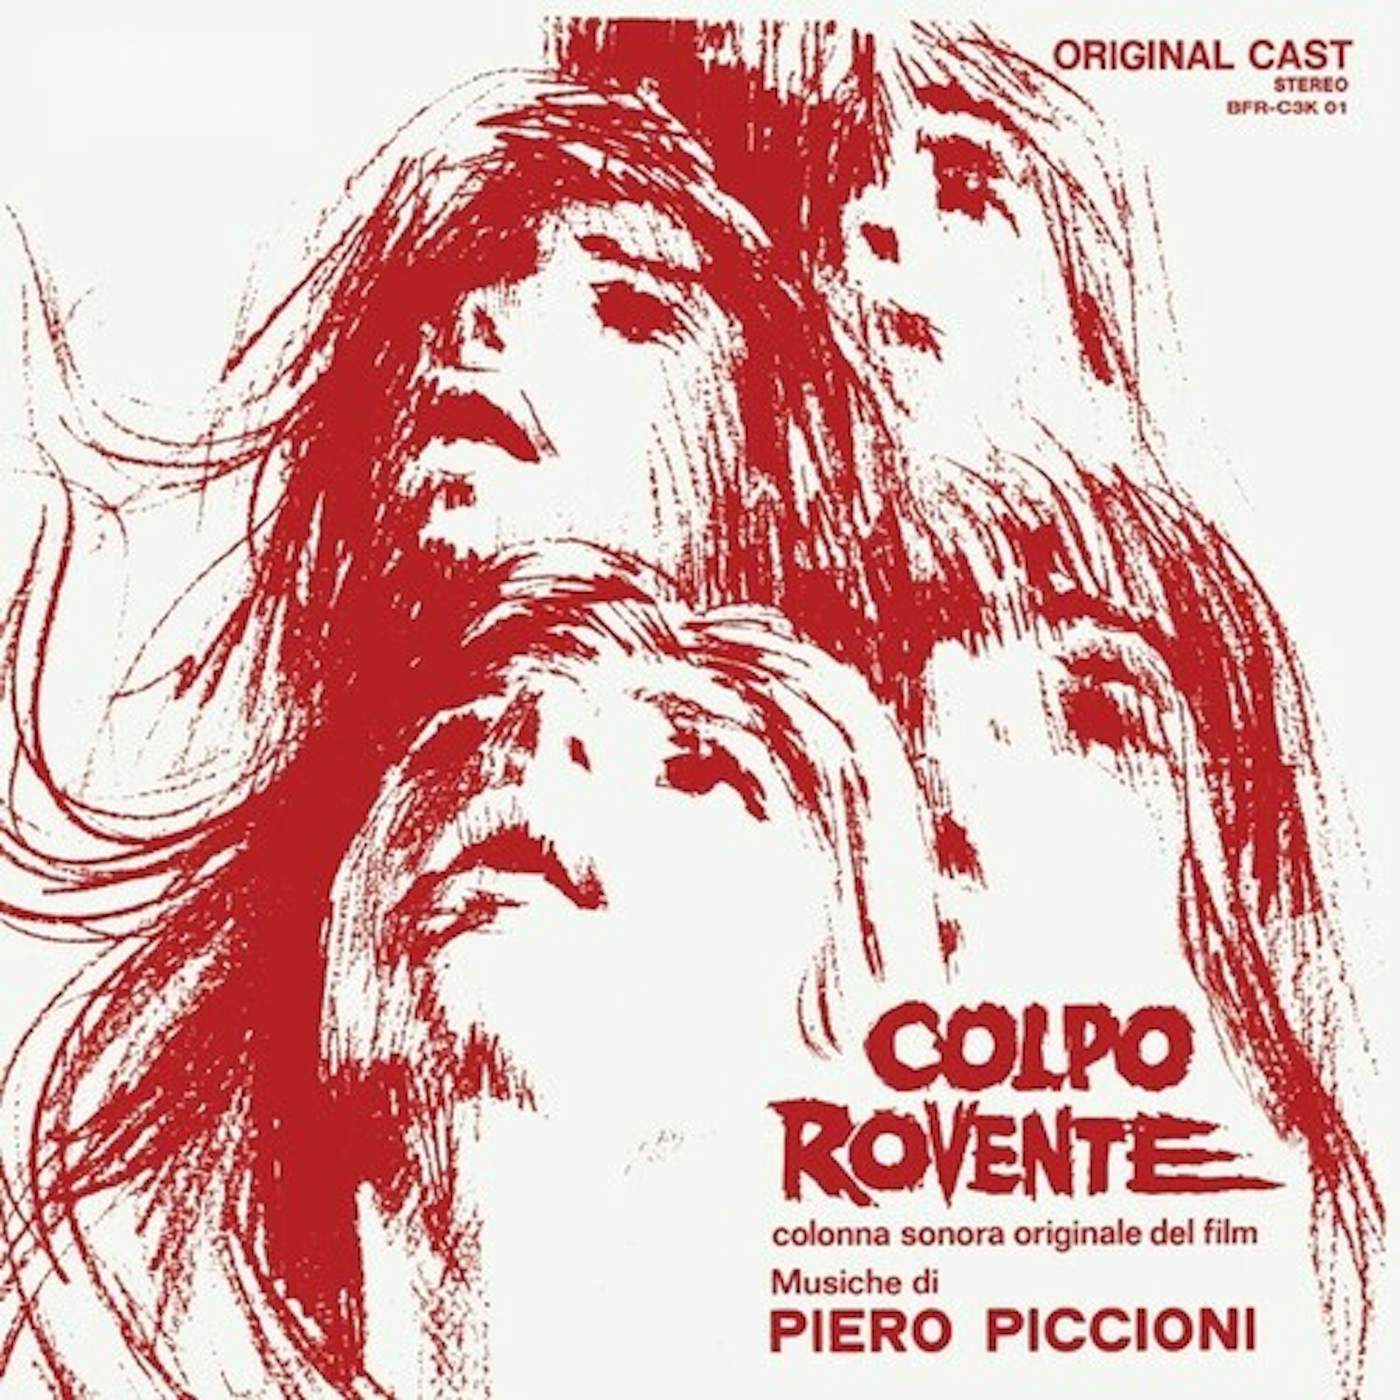 Piero Piccioni Colpo Rovente Vinyl Record